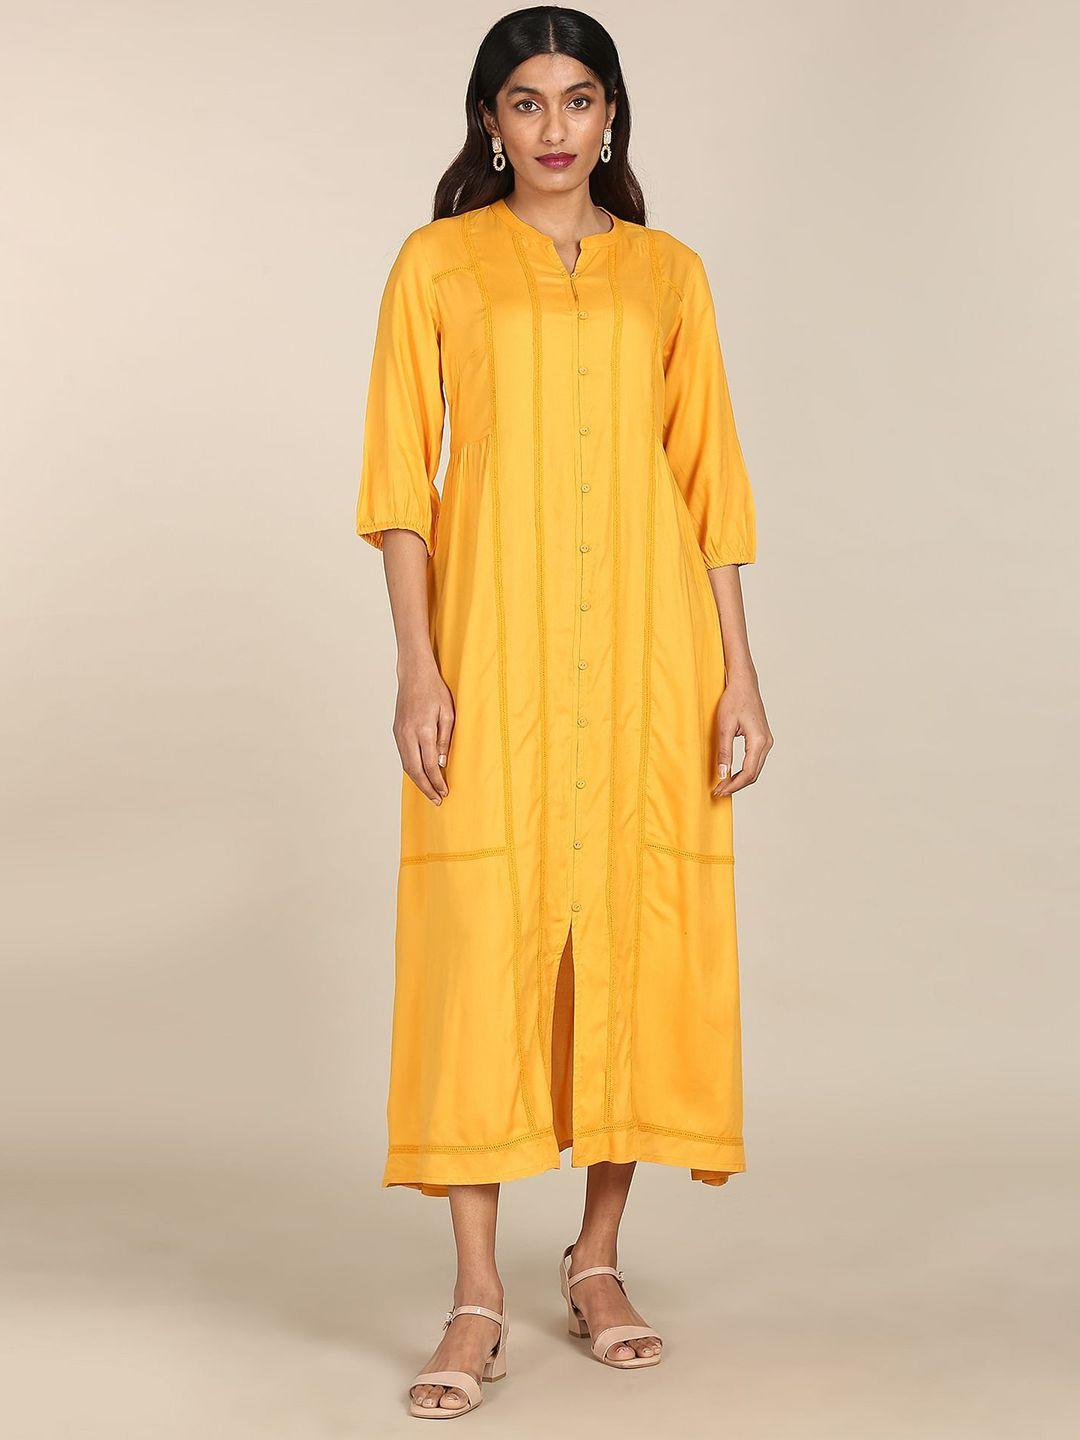 karigari yellow shirt midi dress